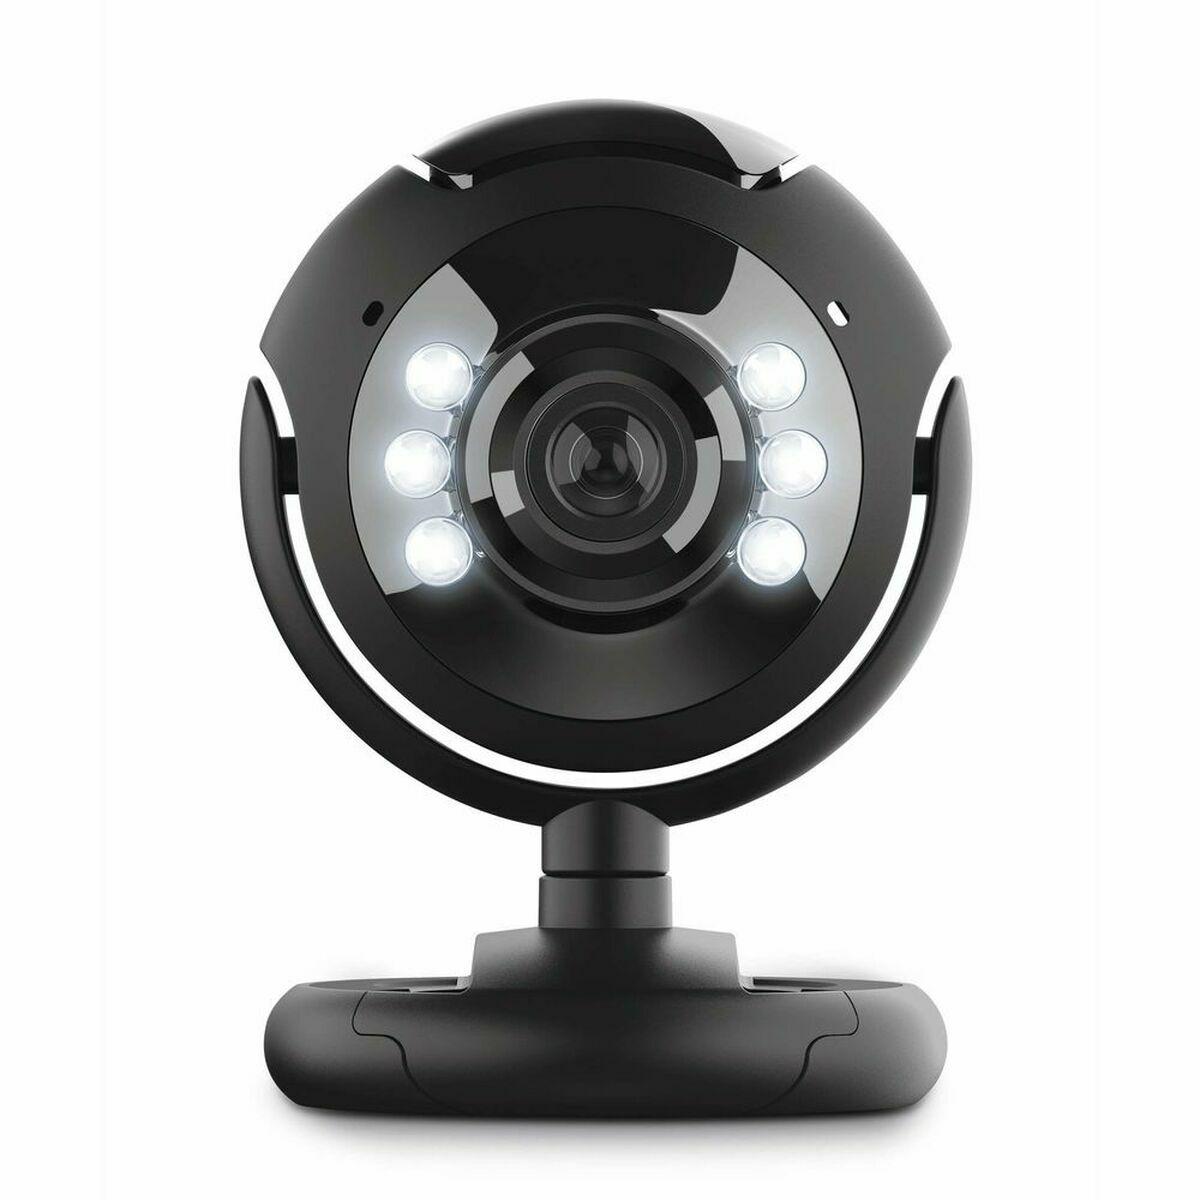 Se Trust SpotLight Webcam Pro 640 x 480 Webkamera Fortrådet hos Boligcenter.dk